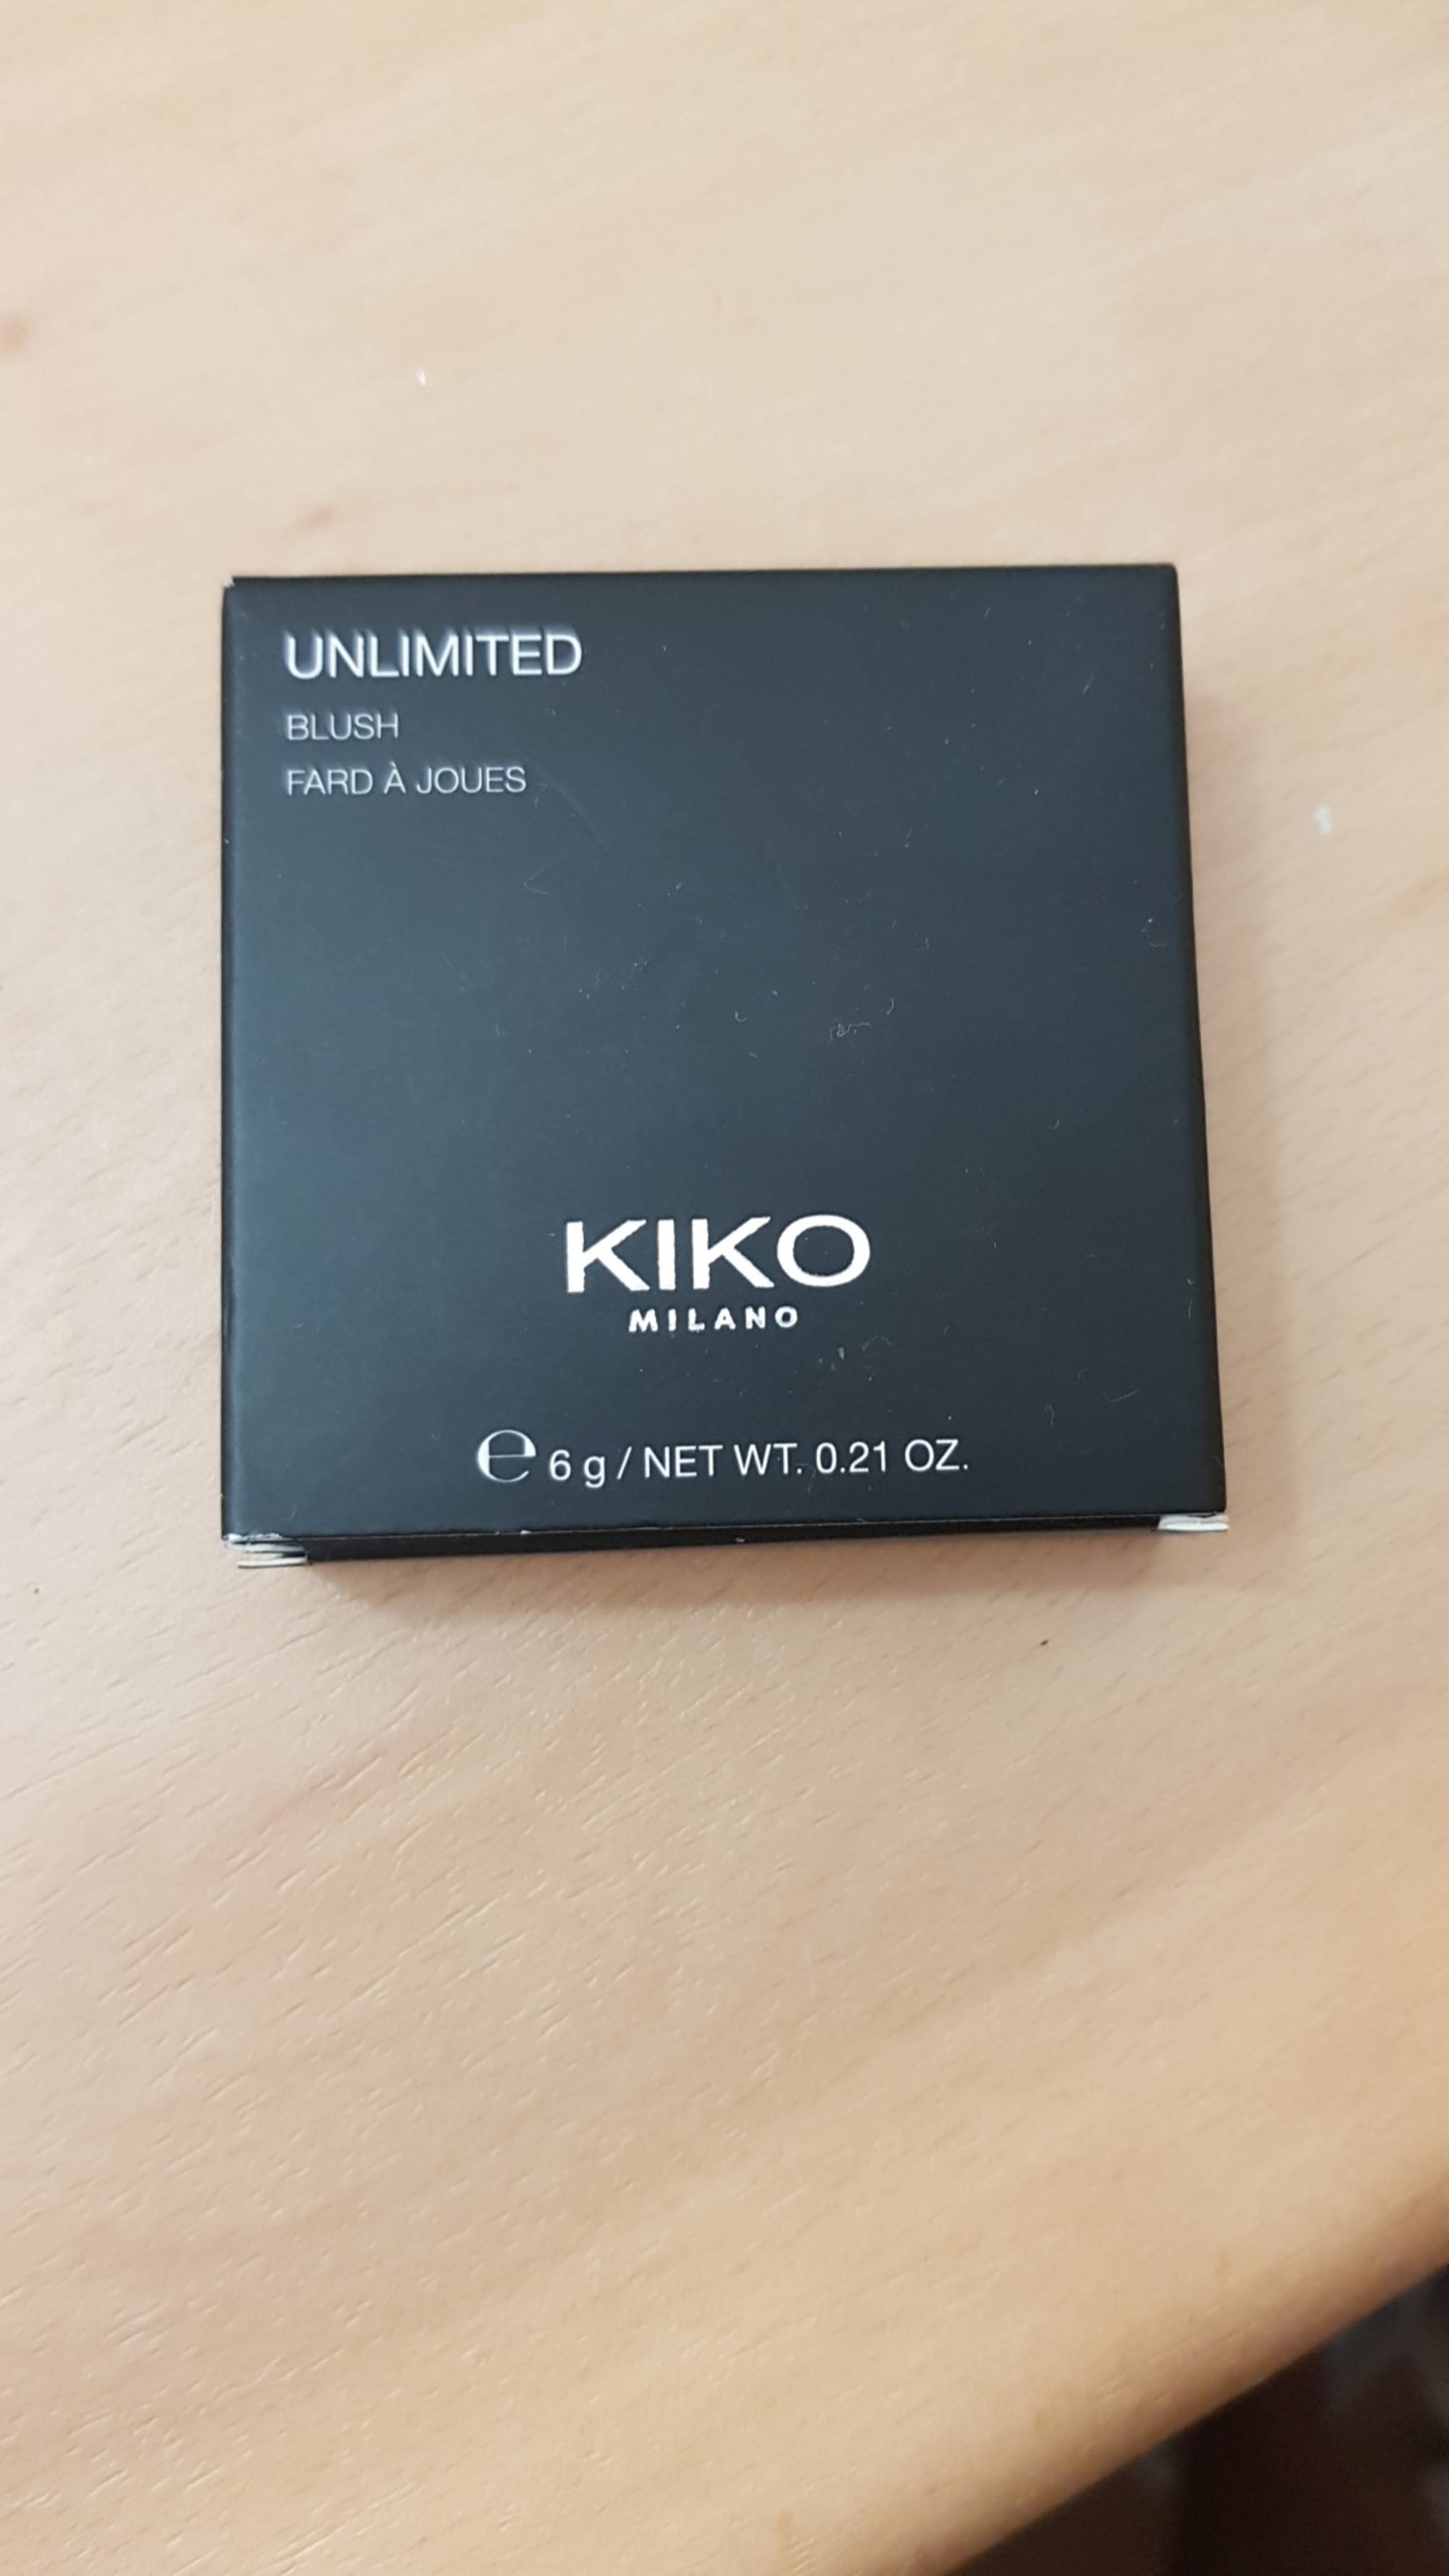 KIKO MILANO - Unlimited - Fard à joues